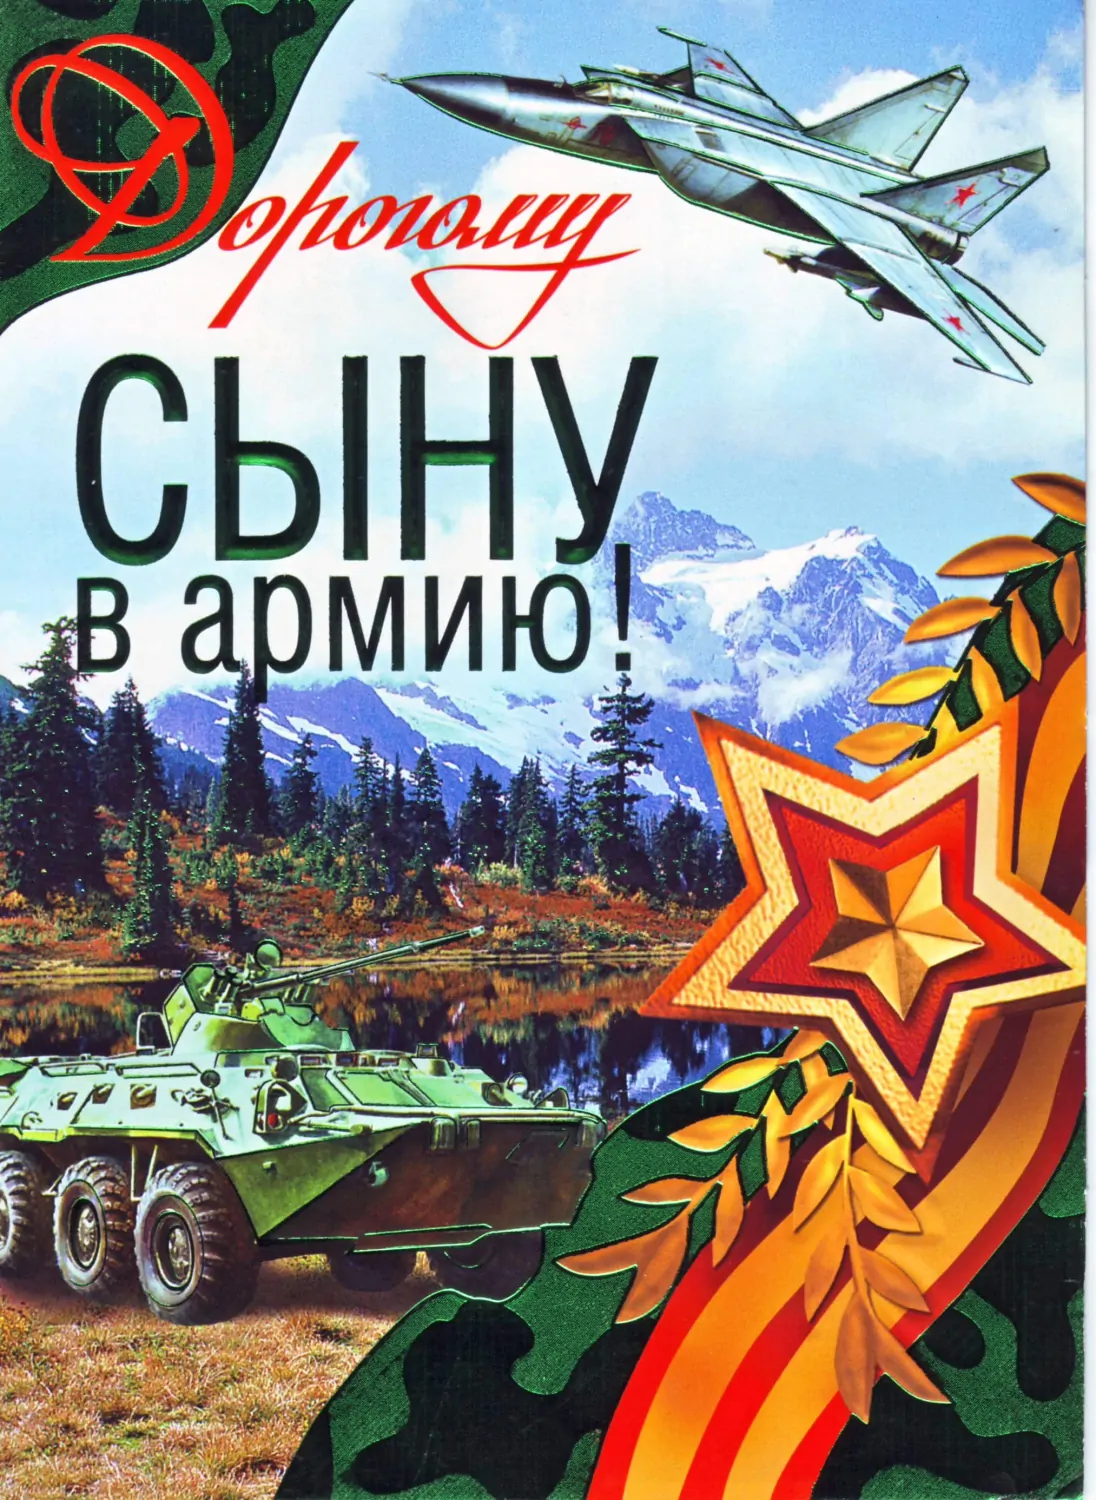 Military propaganda card from Kaliningrad region